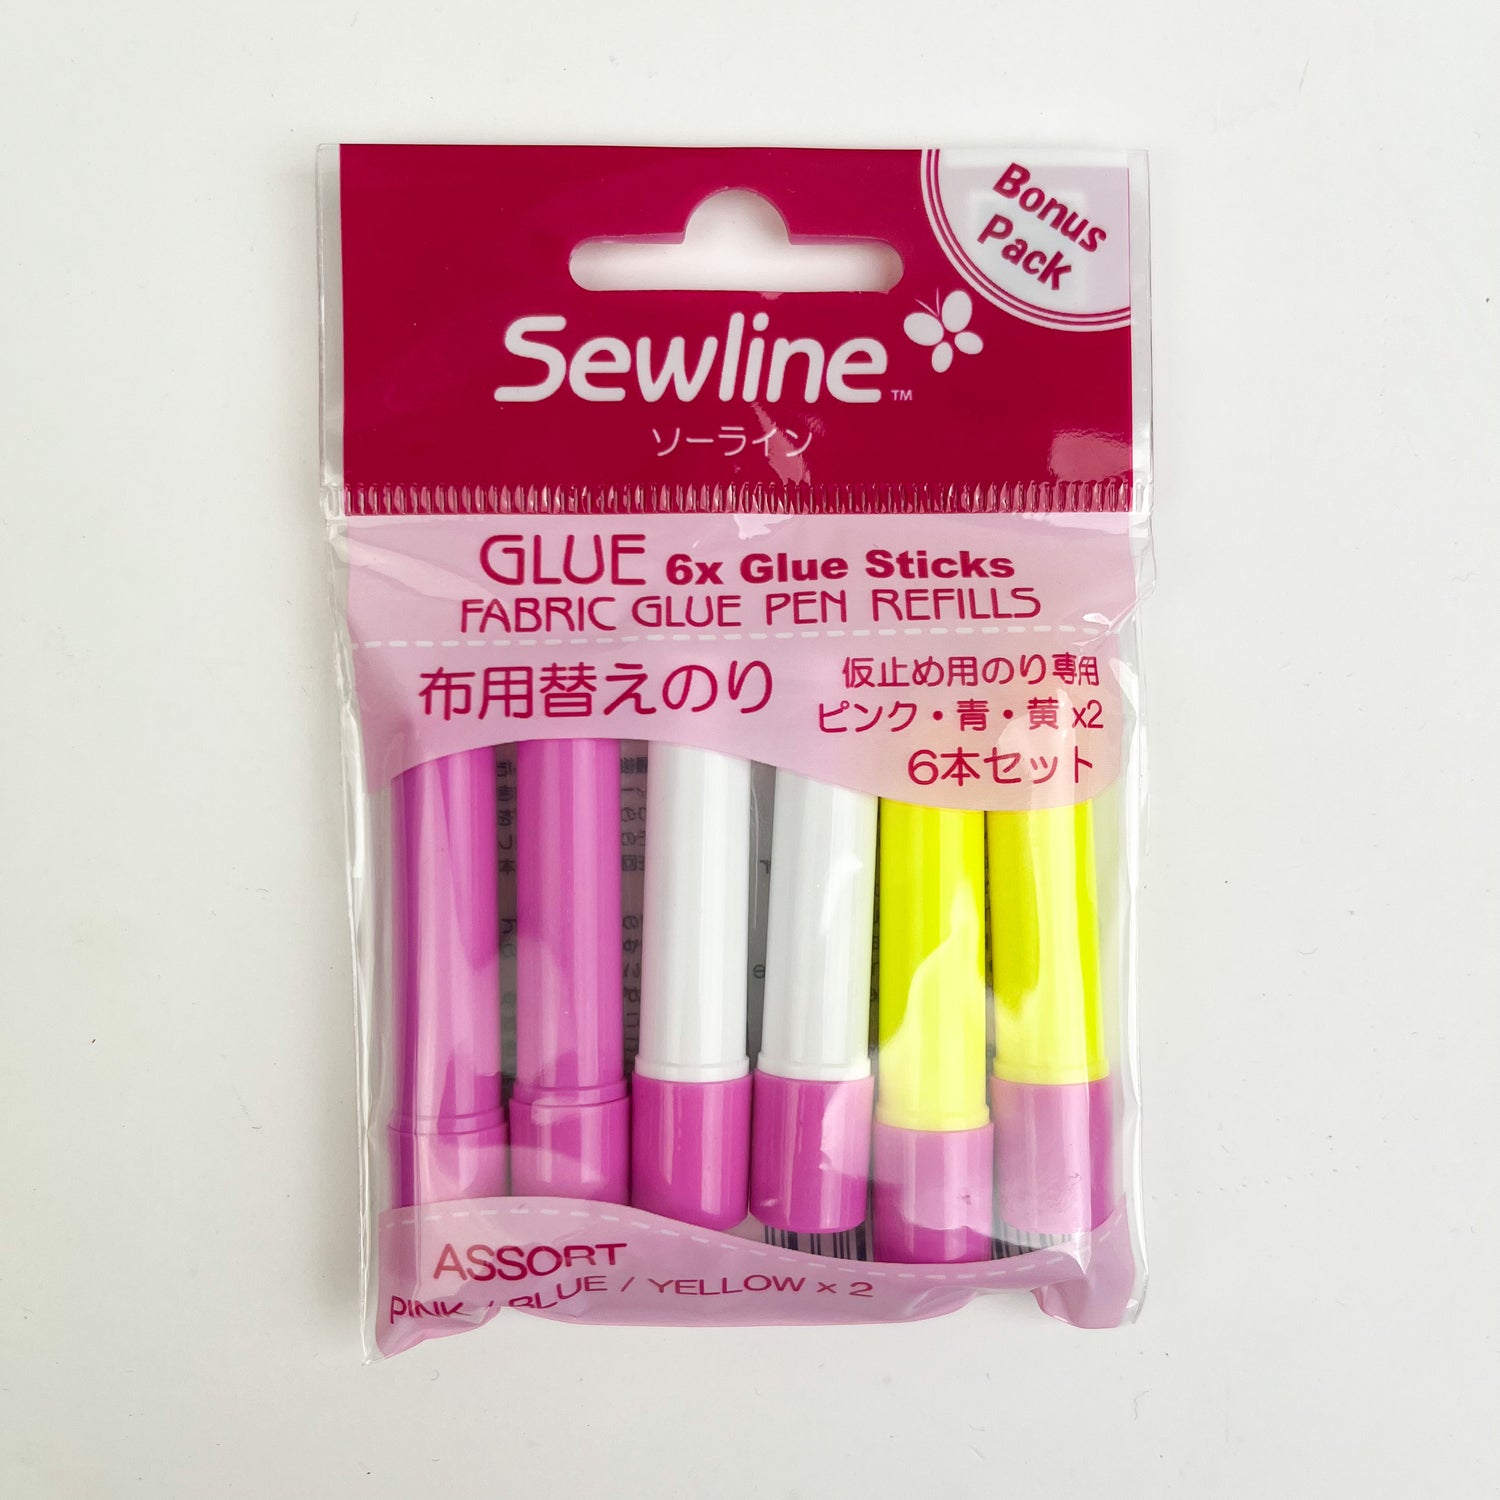 Sewline Glue Pen Refills (6pc) • Perth Sewing Centre (Australia), Perth WA